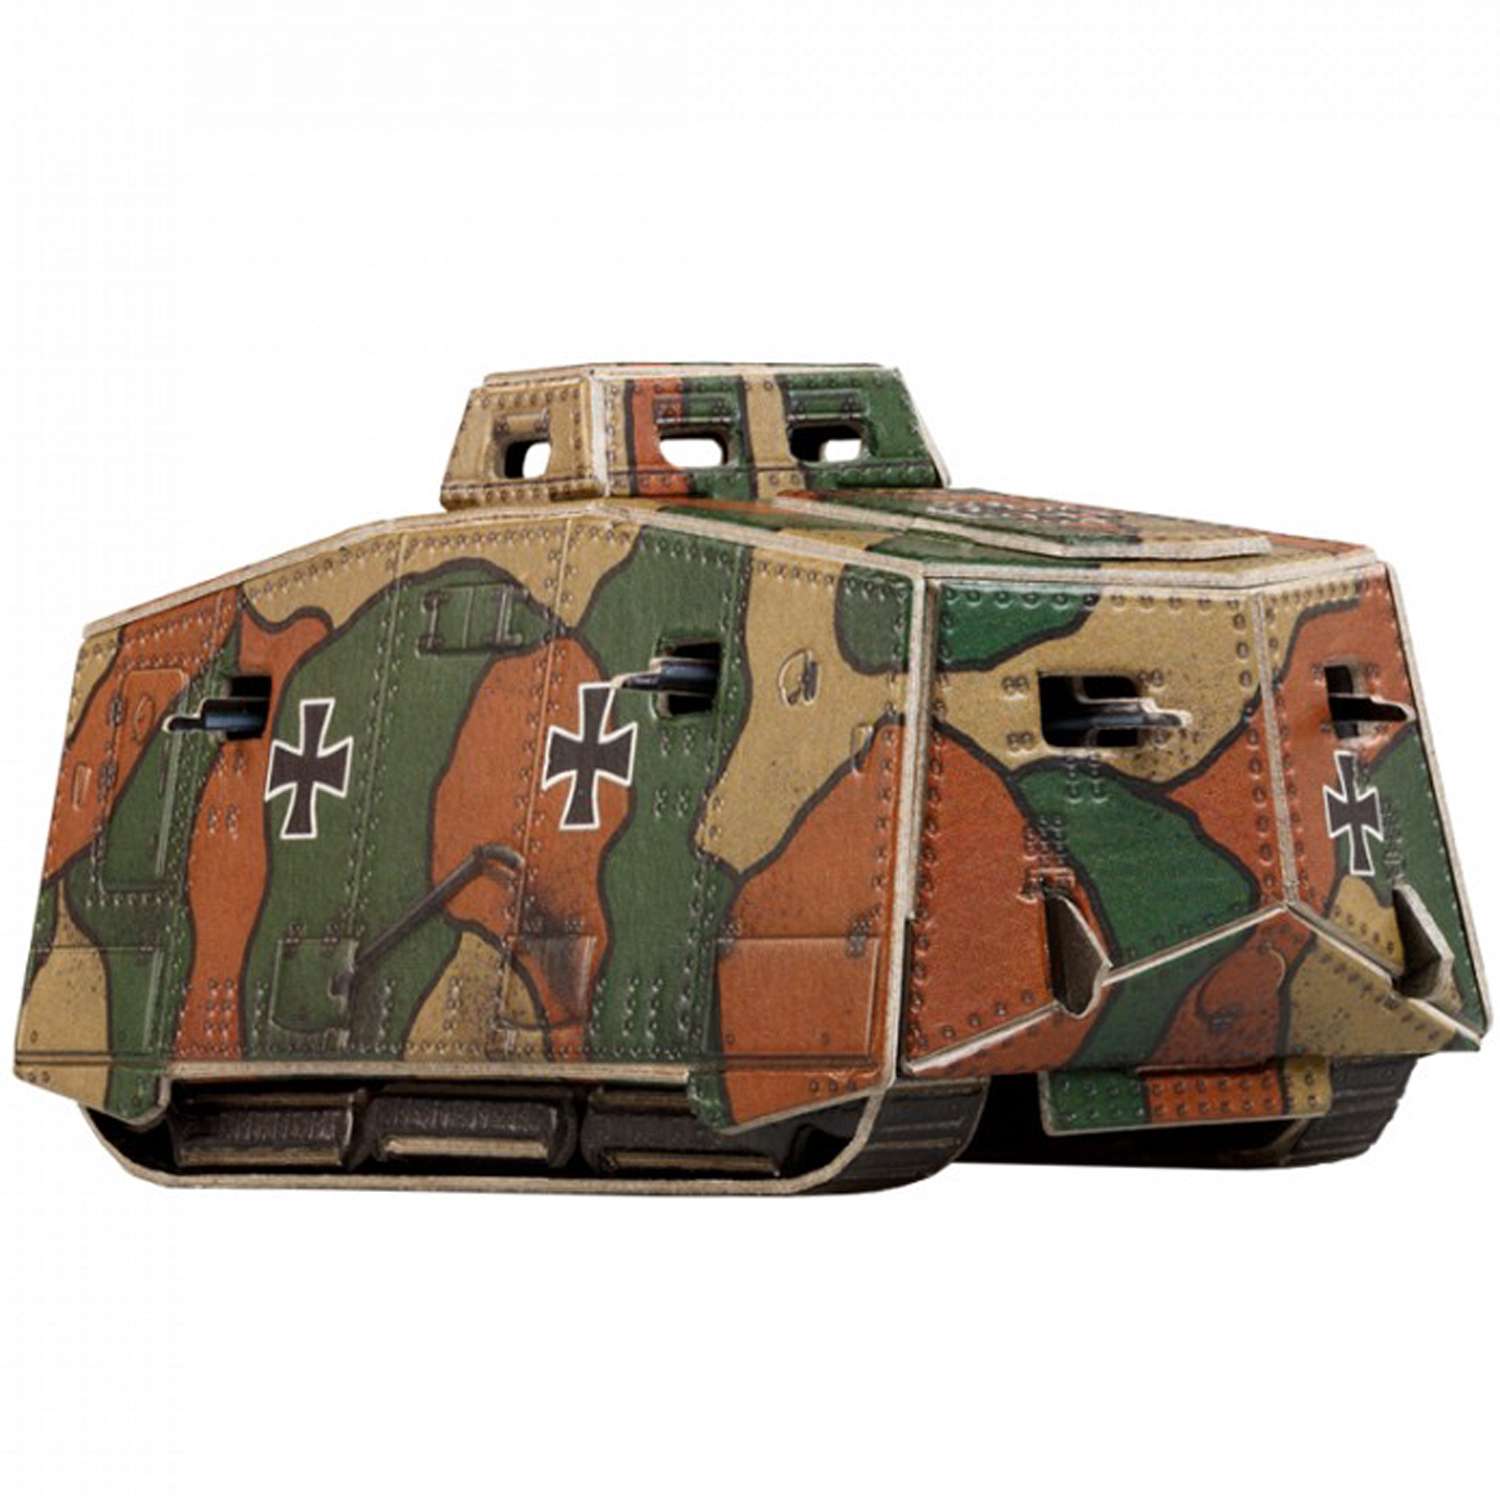 Сборная модель Умная бумага Бронетехника Германский тяжелый танк А7V 580 580 - фото 2